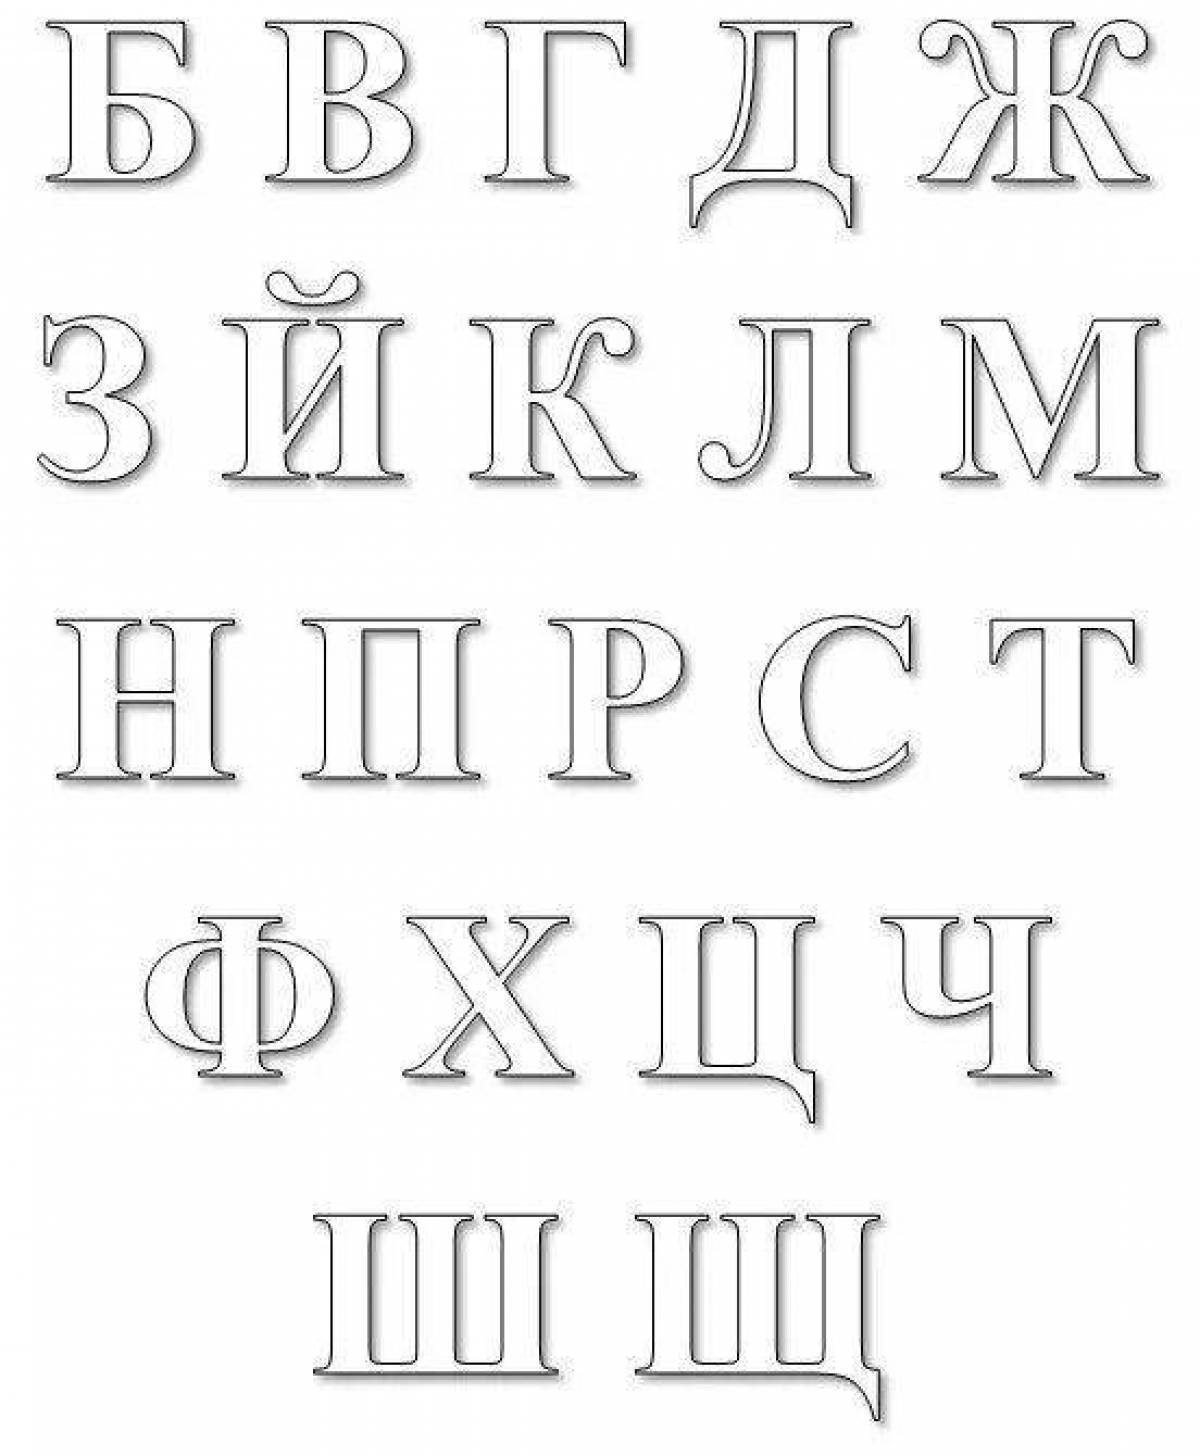 Фото Завораживающий русский алфавит по порядку